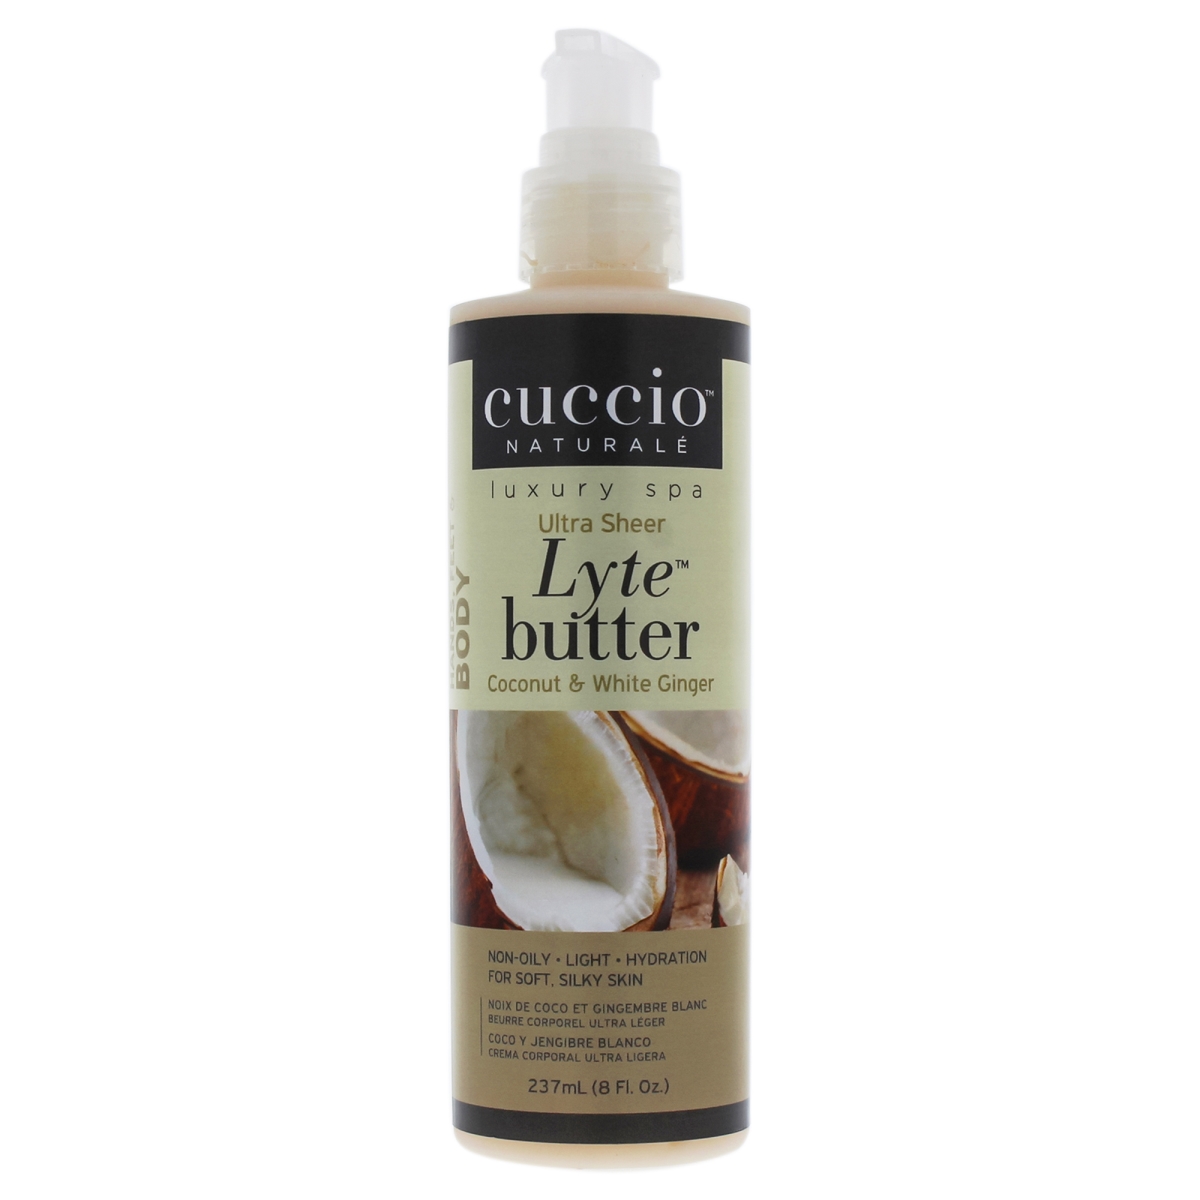 I0090889 Lyte Ultra-sheer Body Butter Lotion For Unisex - Coconut & White Ginger - 8 Oz